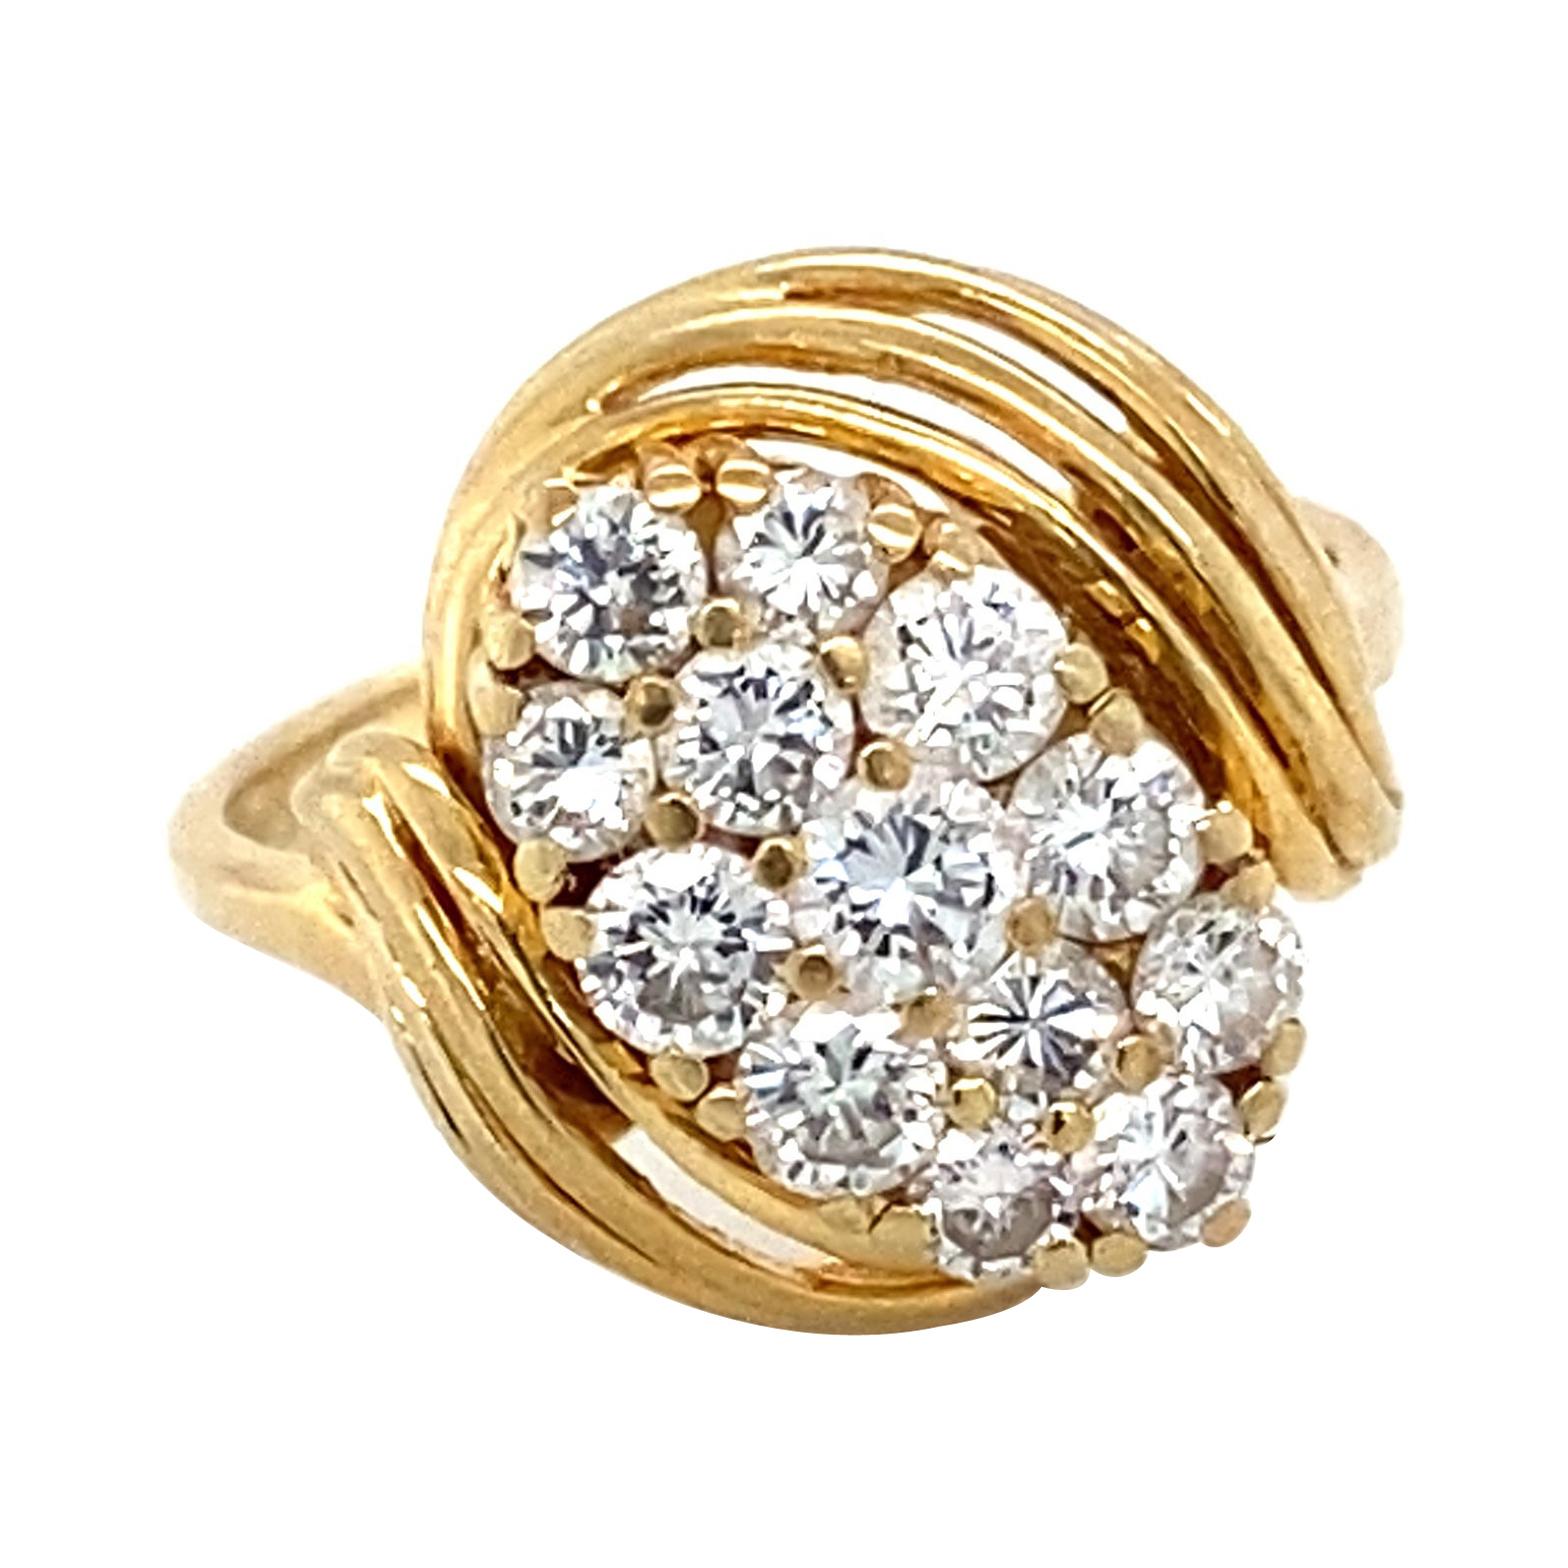 1980s 0.60 Carat Diamond Ring in 14 Karat Yellow Gold